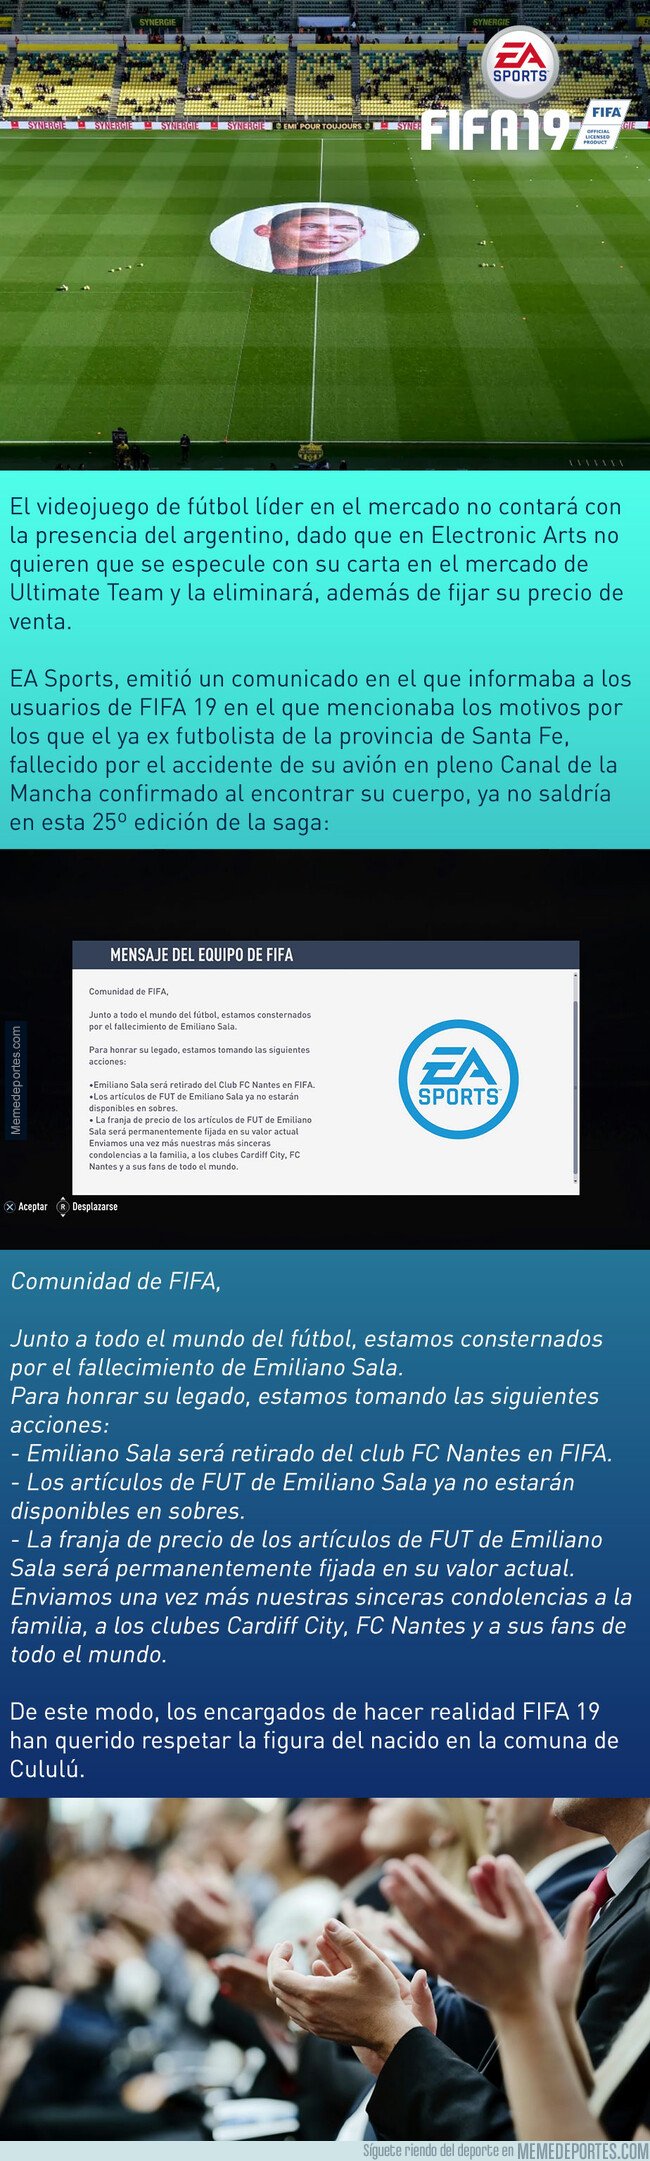 1064200 - FIFA19 decide retirar la carta de Emiliano Sala en un buen gesto de la compañía